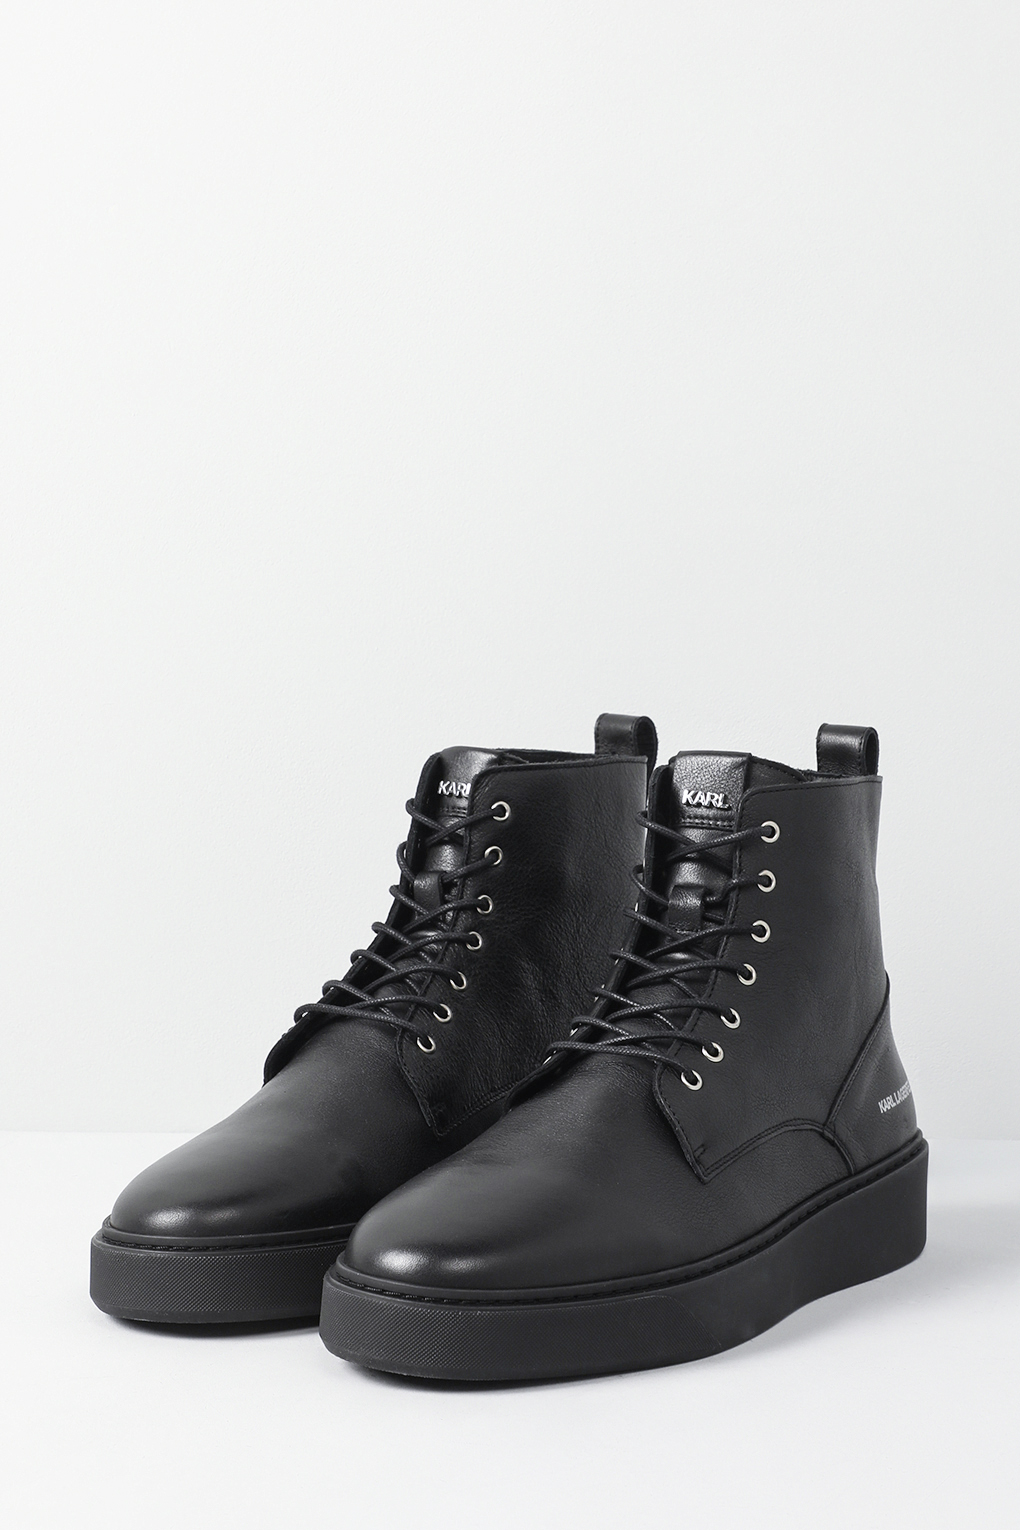 Ботинки мужские Karl Lagerfeld 855003-533470 черные 41 EU